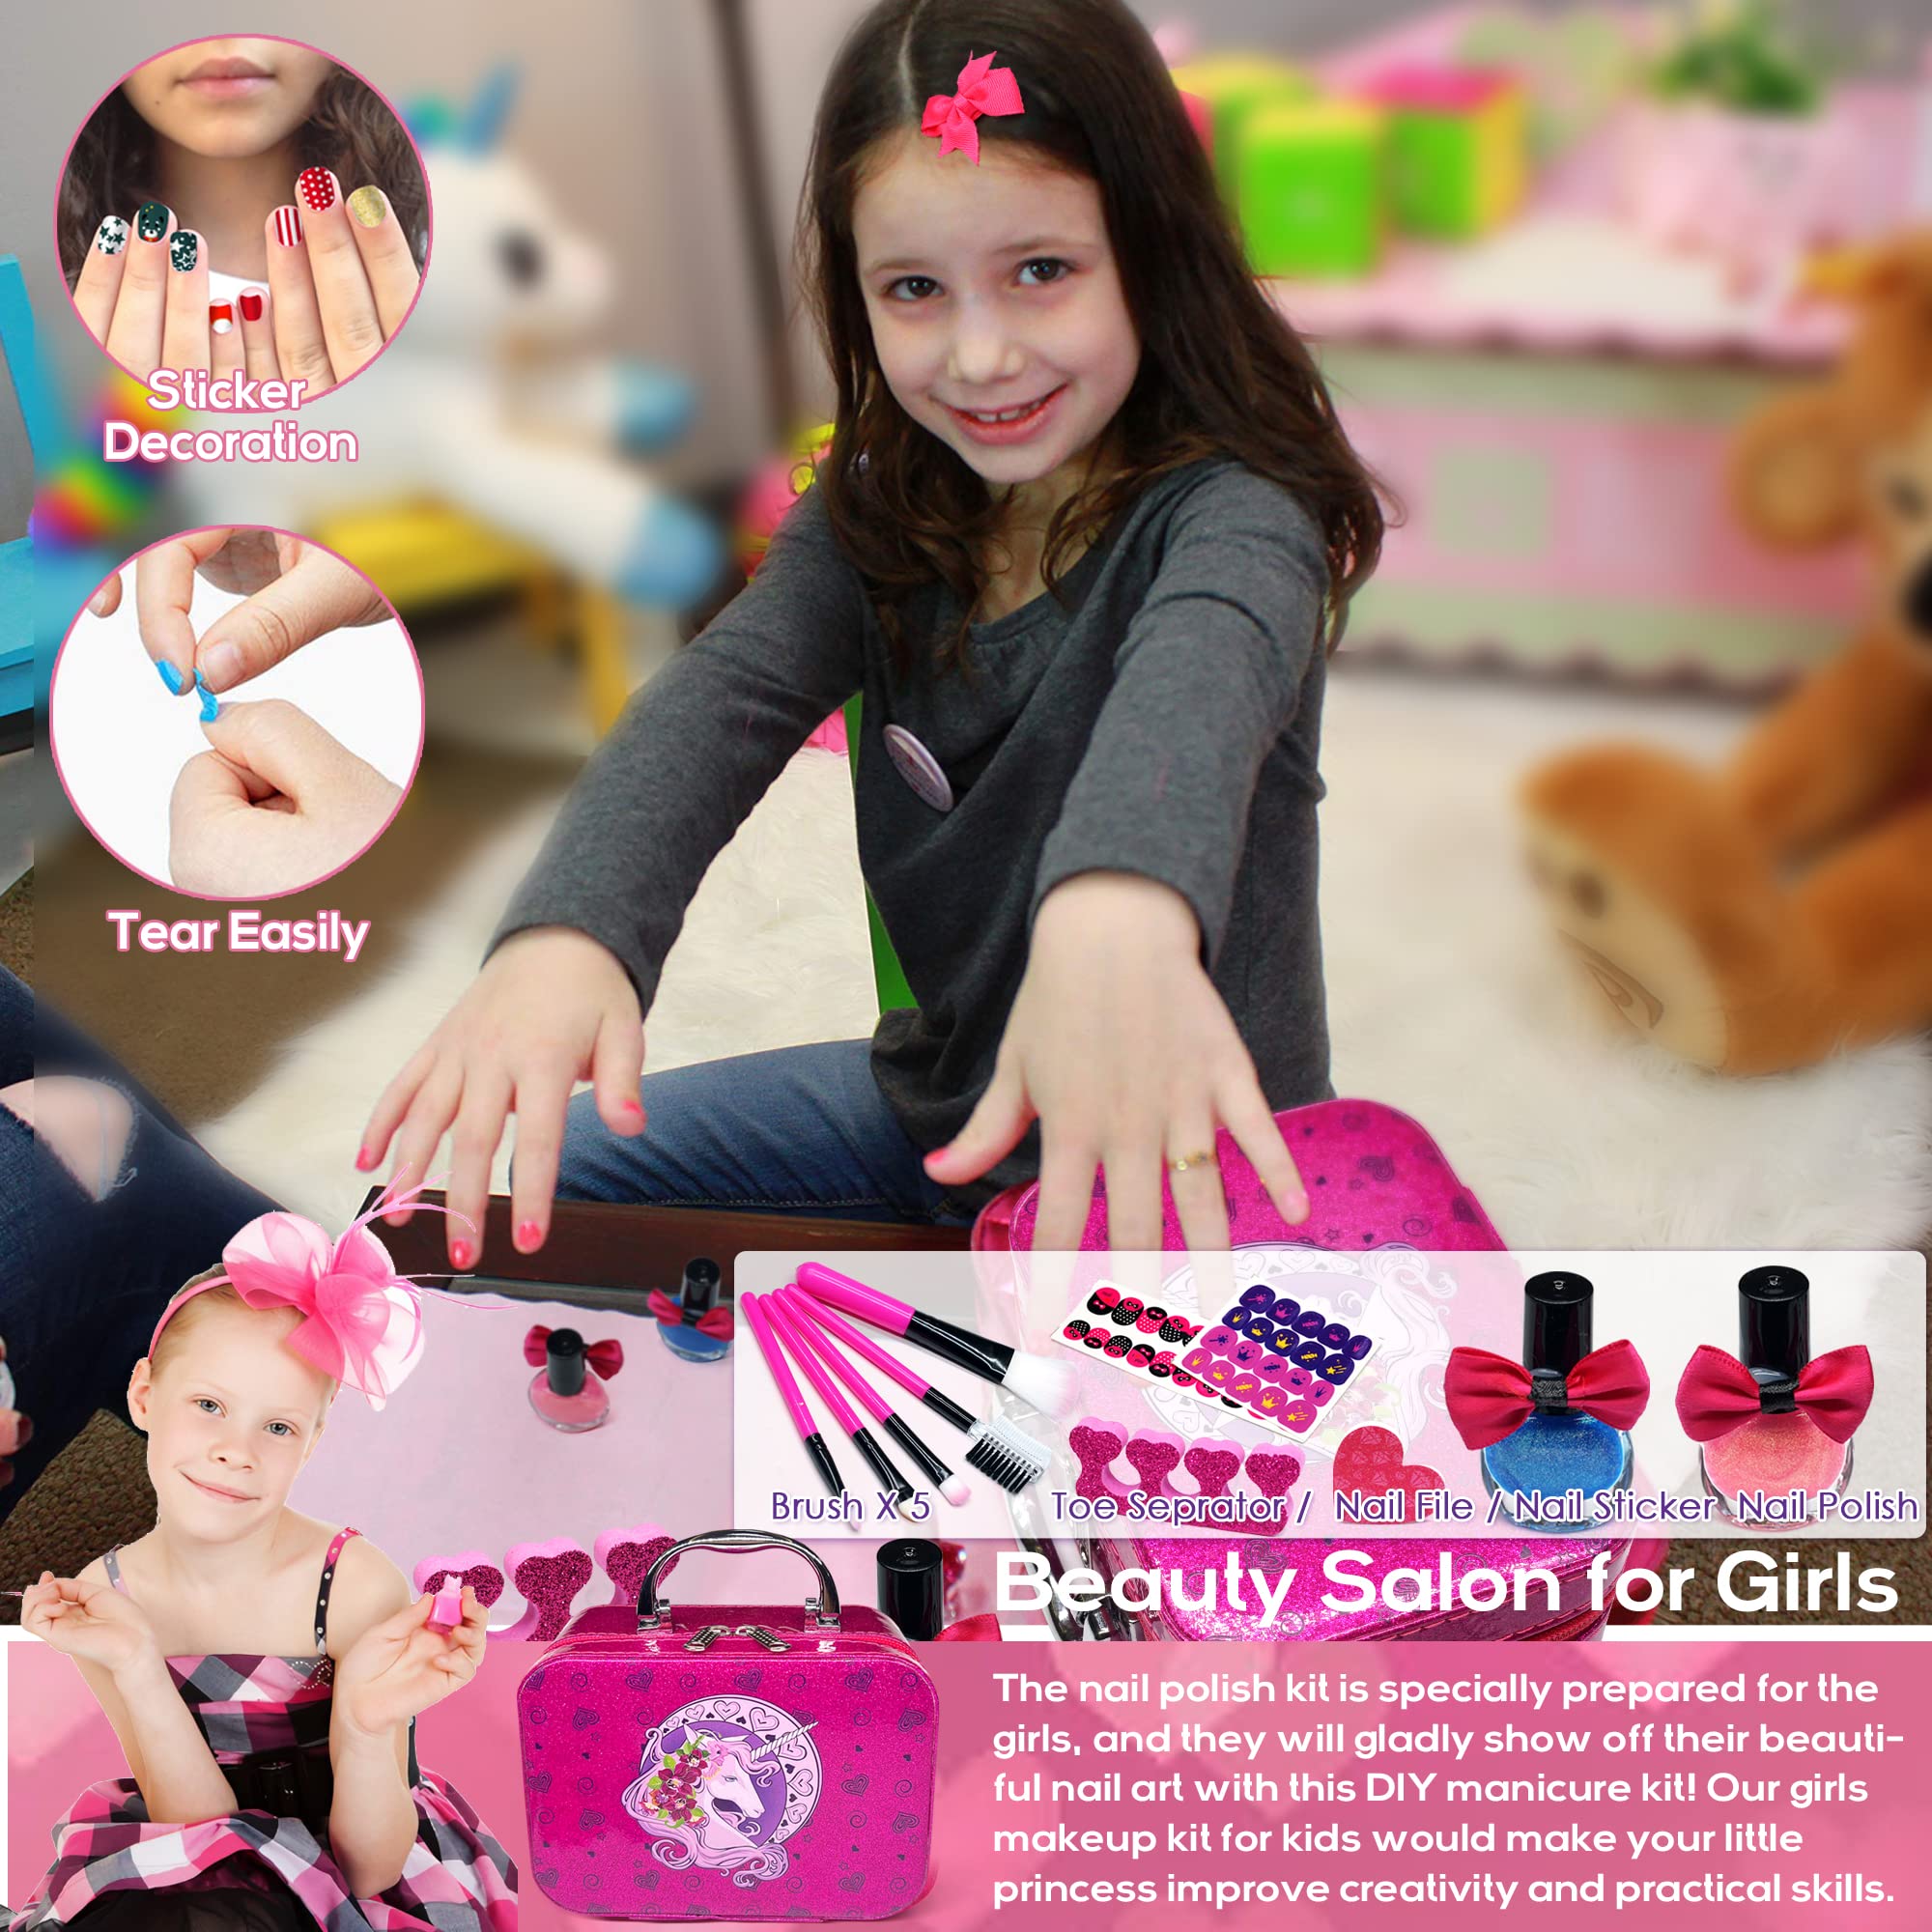 Kids Makeup Kit for Girls - 27PCS Washable Toddler Makeup Kit, Real Little Girls Makeup Kit , Play Makeup for Little Girls Children, Princess Christmas Birthday Gift for Girls Aged 4 5 6 7 8 9